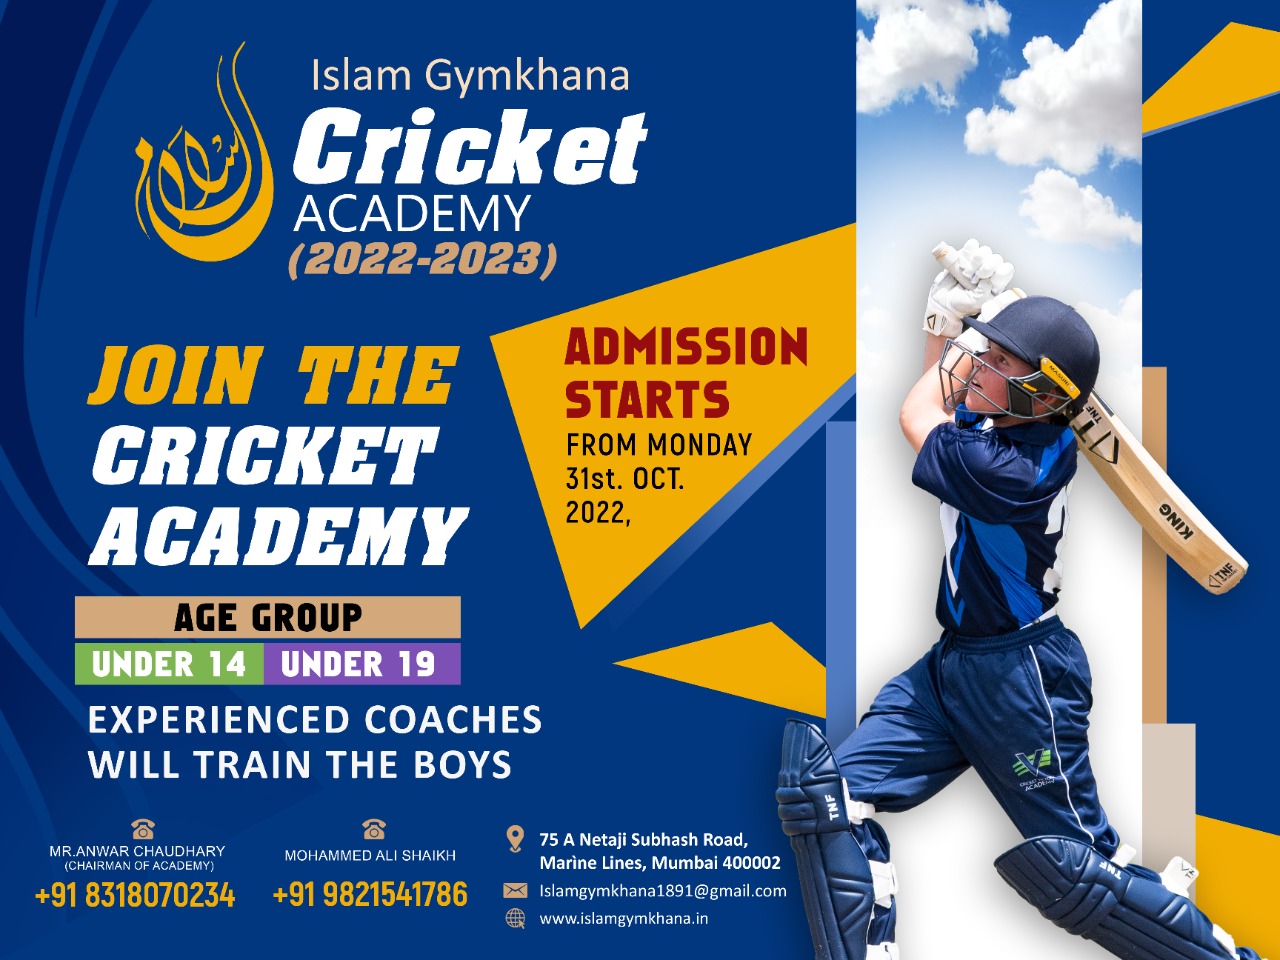 इस्लाम जिमखाना 2022-2023 क्रिकेट अकादमी में अंडर-14 और अंडर-19 के लिए दाखिले जारी